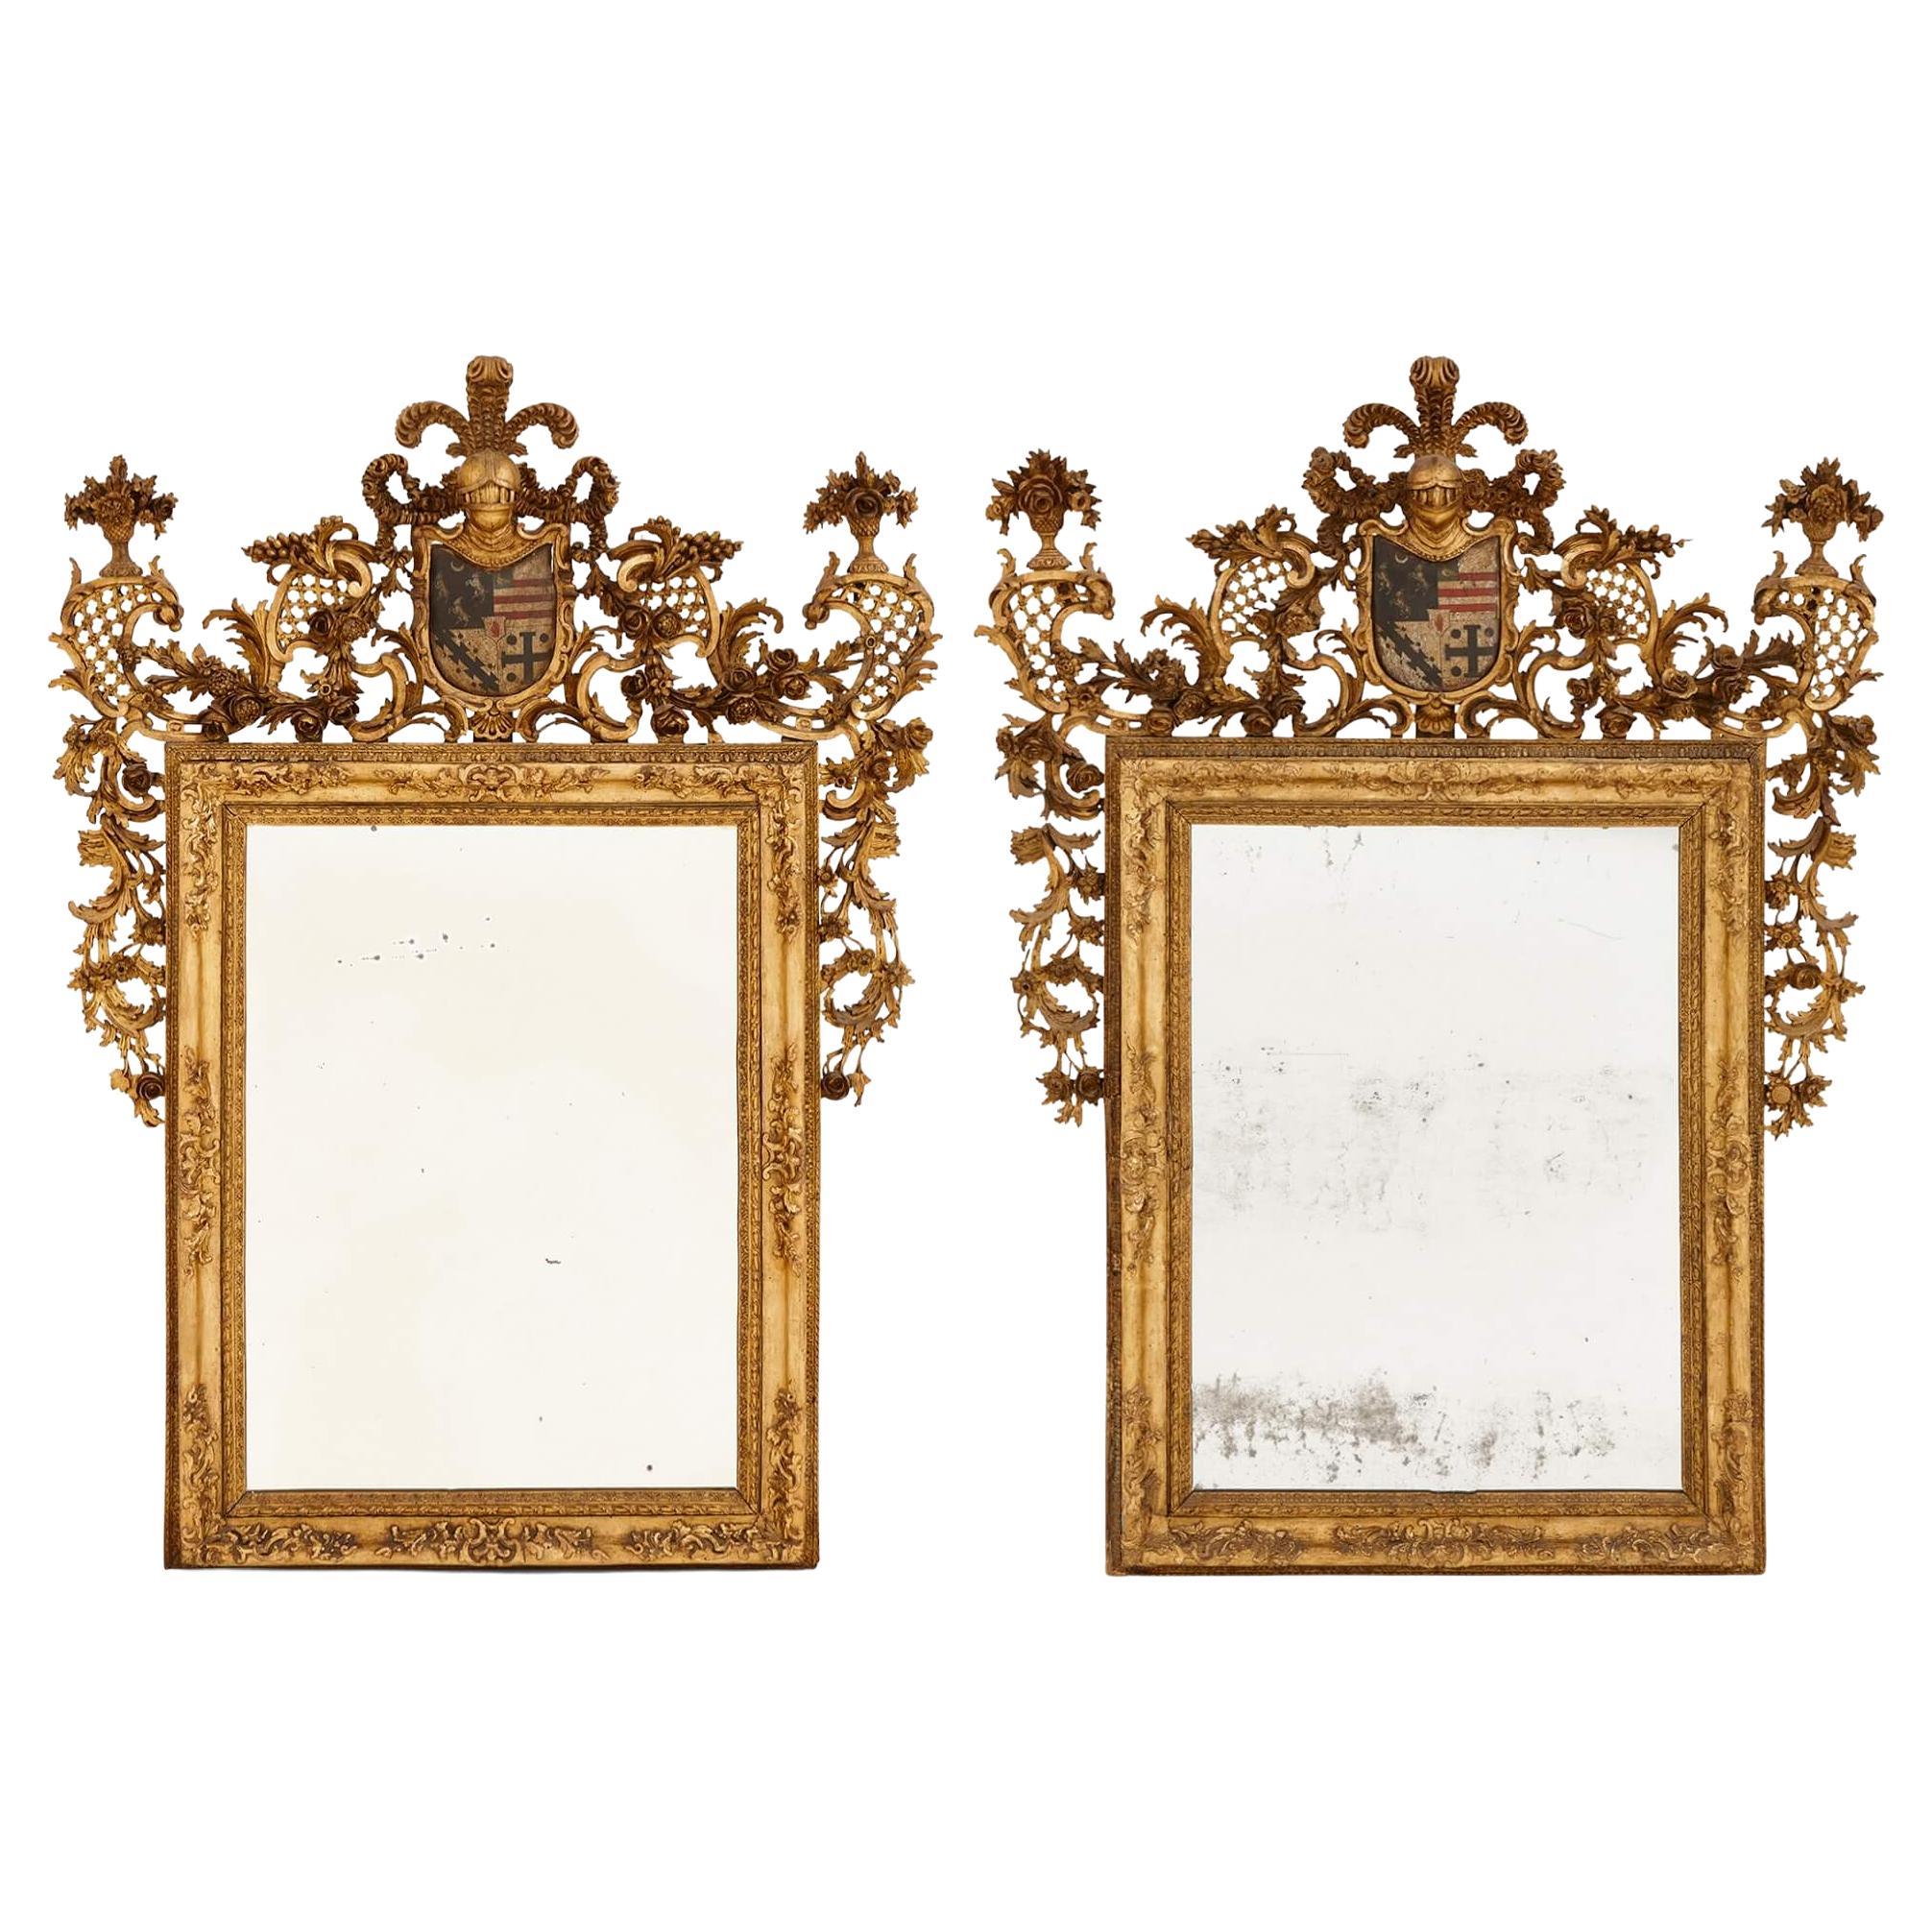 Zwei italienische Antique Mirrors aus Giltwood und mit Polychromie verziert